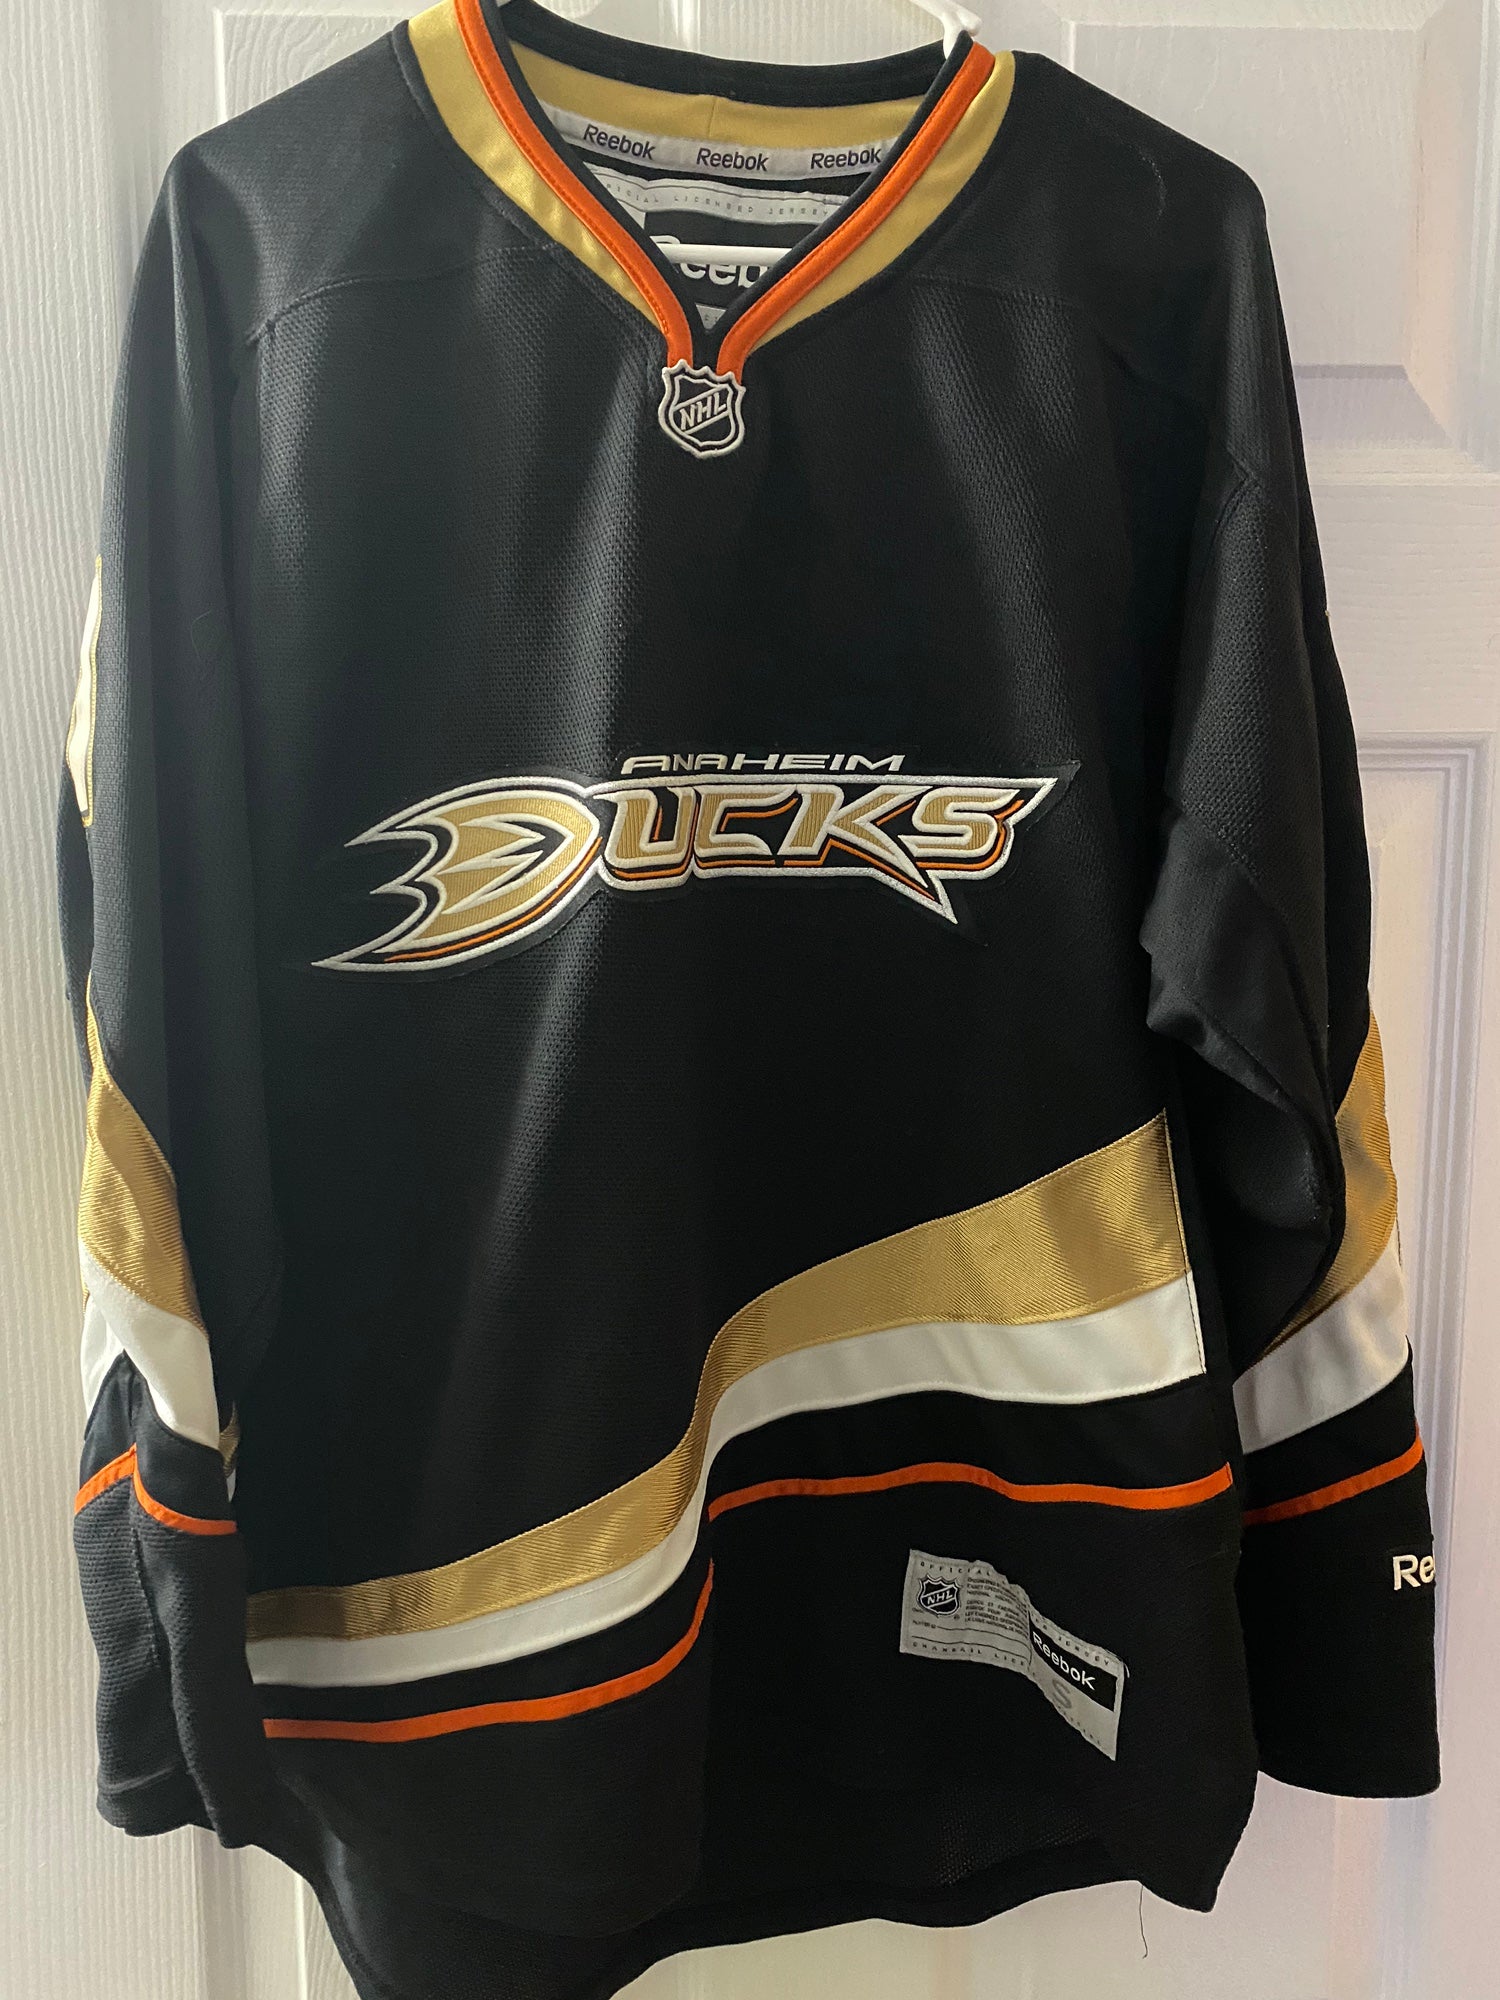 Reebok, Other, Anaheim Ducks Jersey